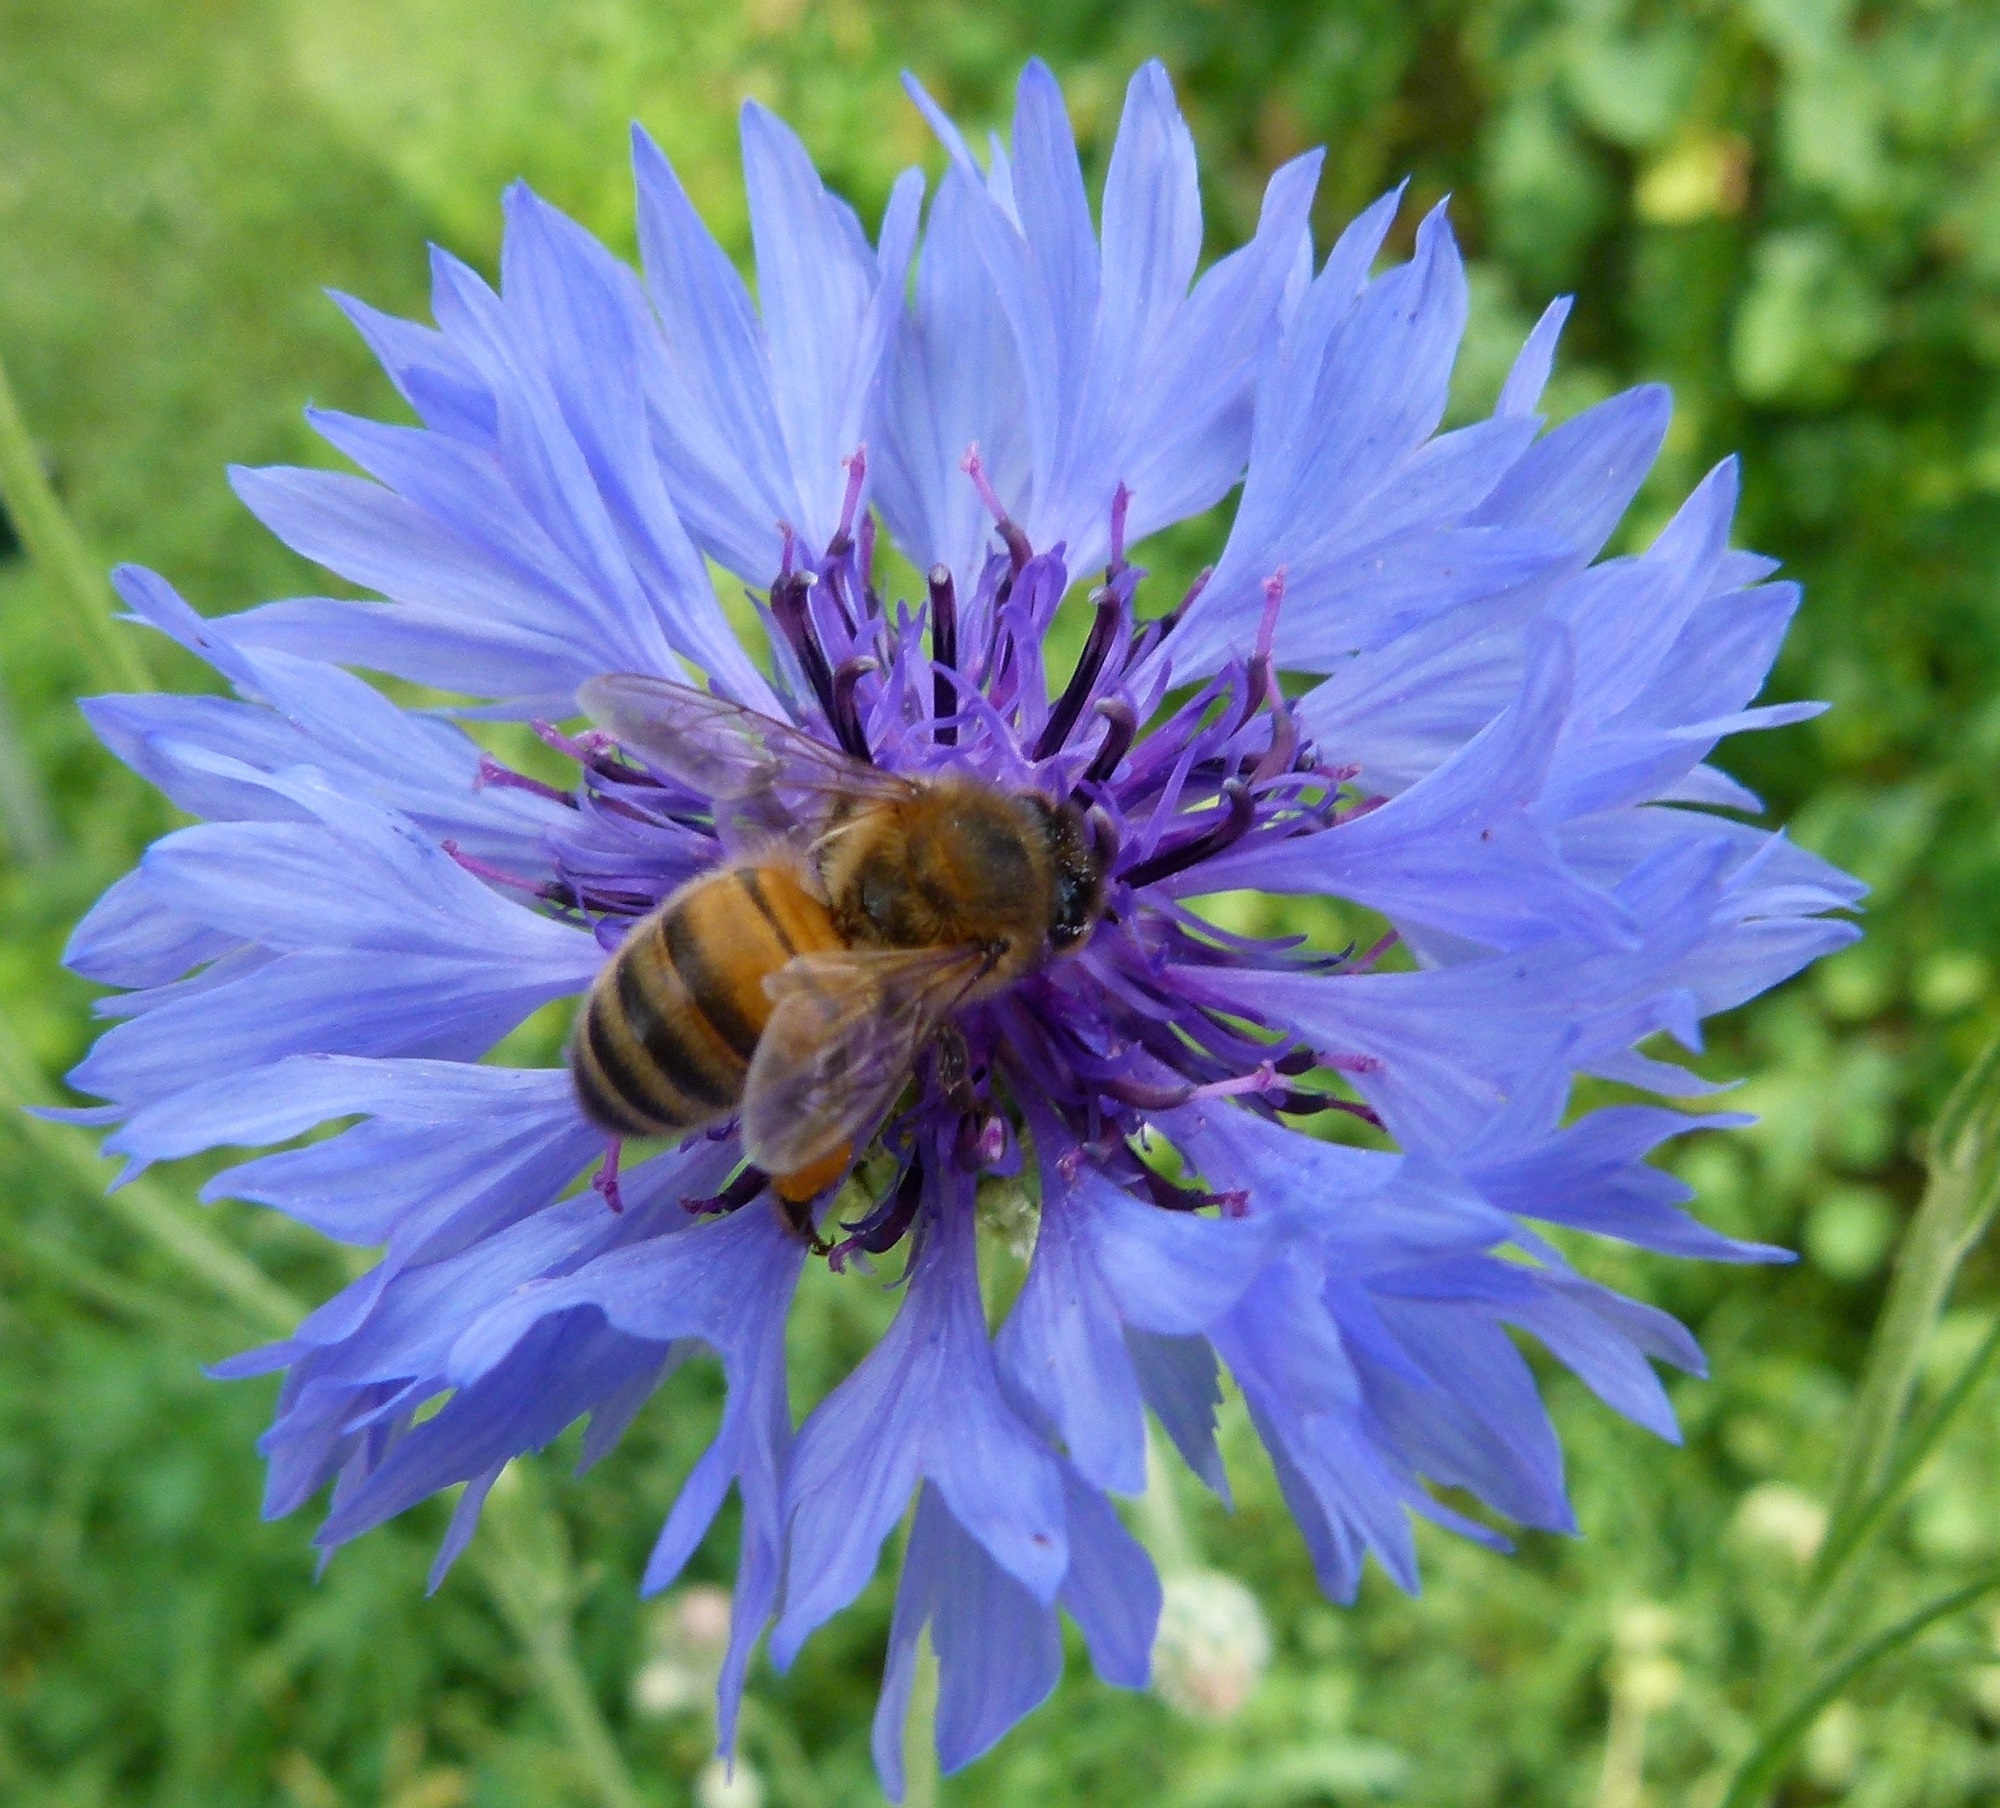 Western Honeybee on the Flower, Bee, Blooming, Flower, Fragrance, HQ Photo